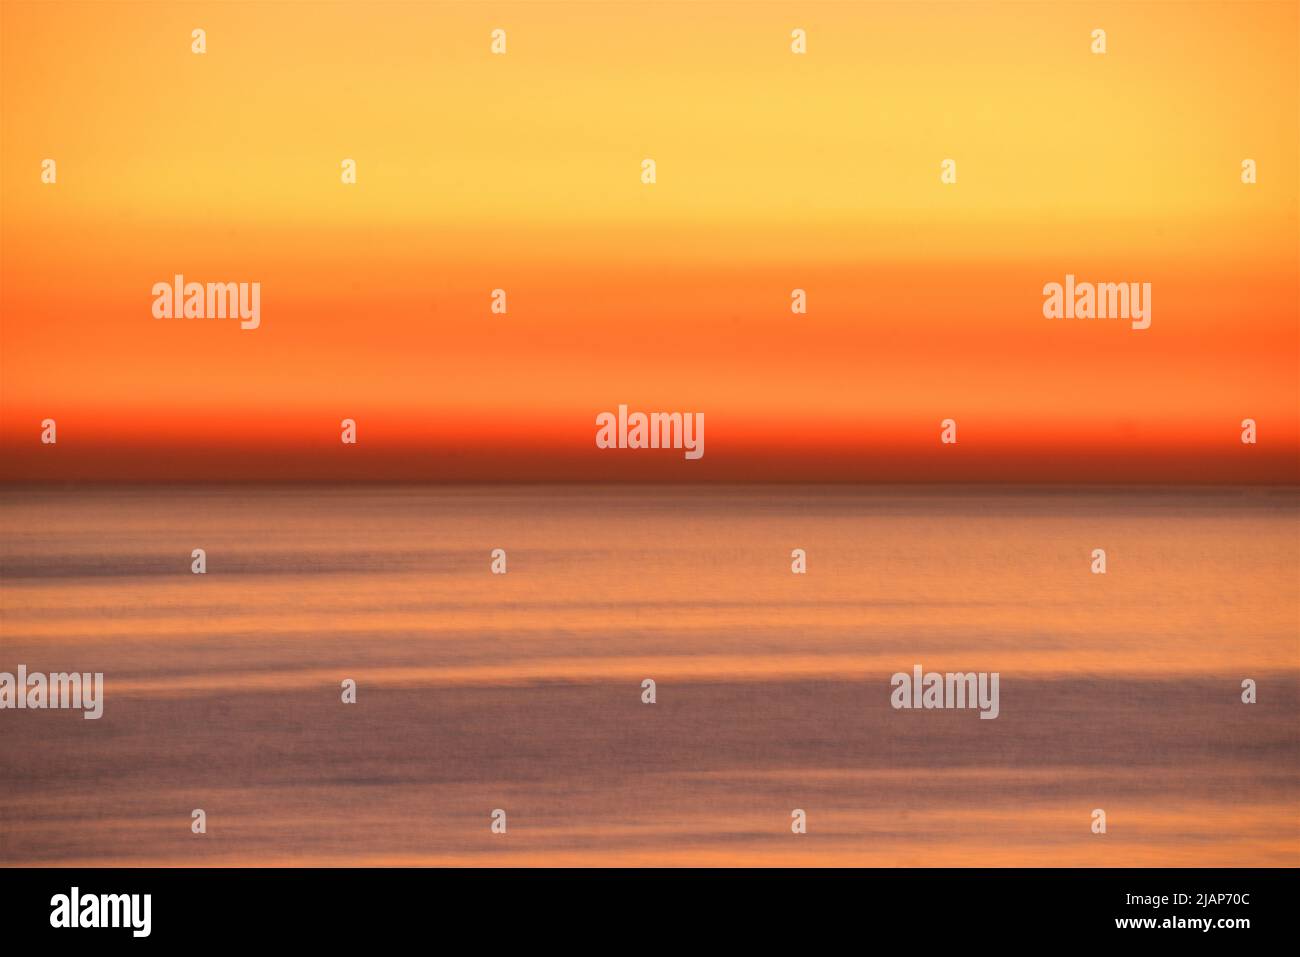 Detalles abstractos de ondas borrosas en movimiento en un mar tranquilo con un horizonte dorado al atardecer más allá. Canal en inglés, Reino Unido. Foto de stock